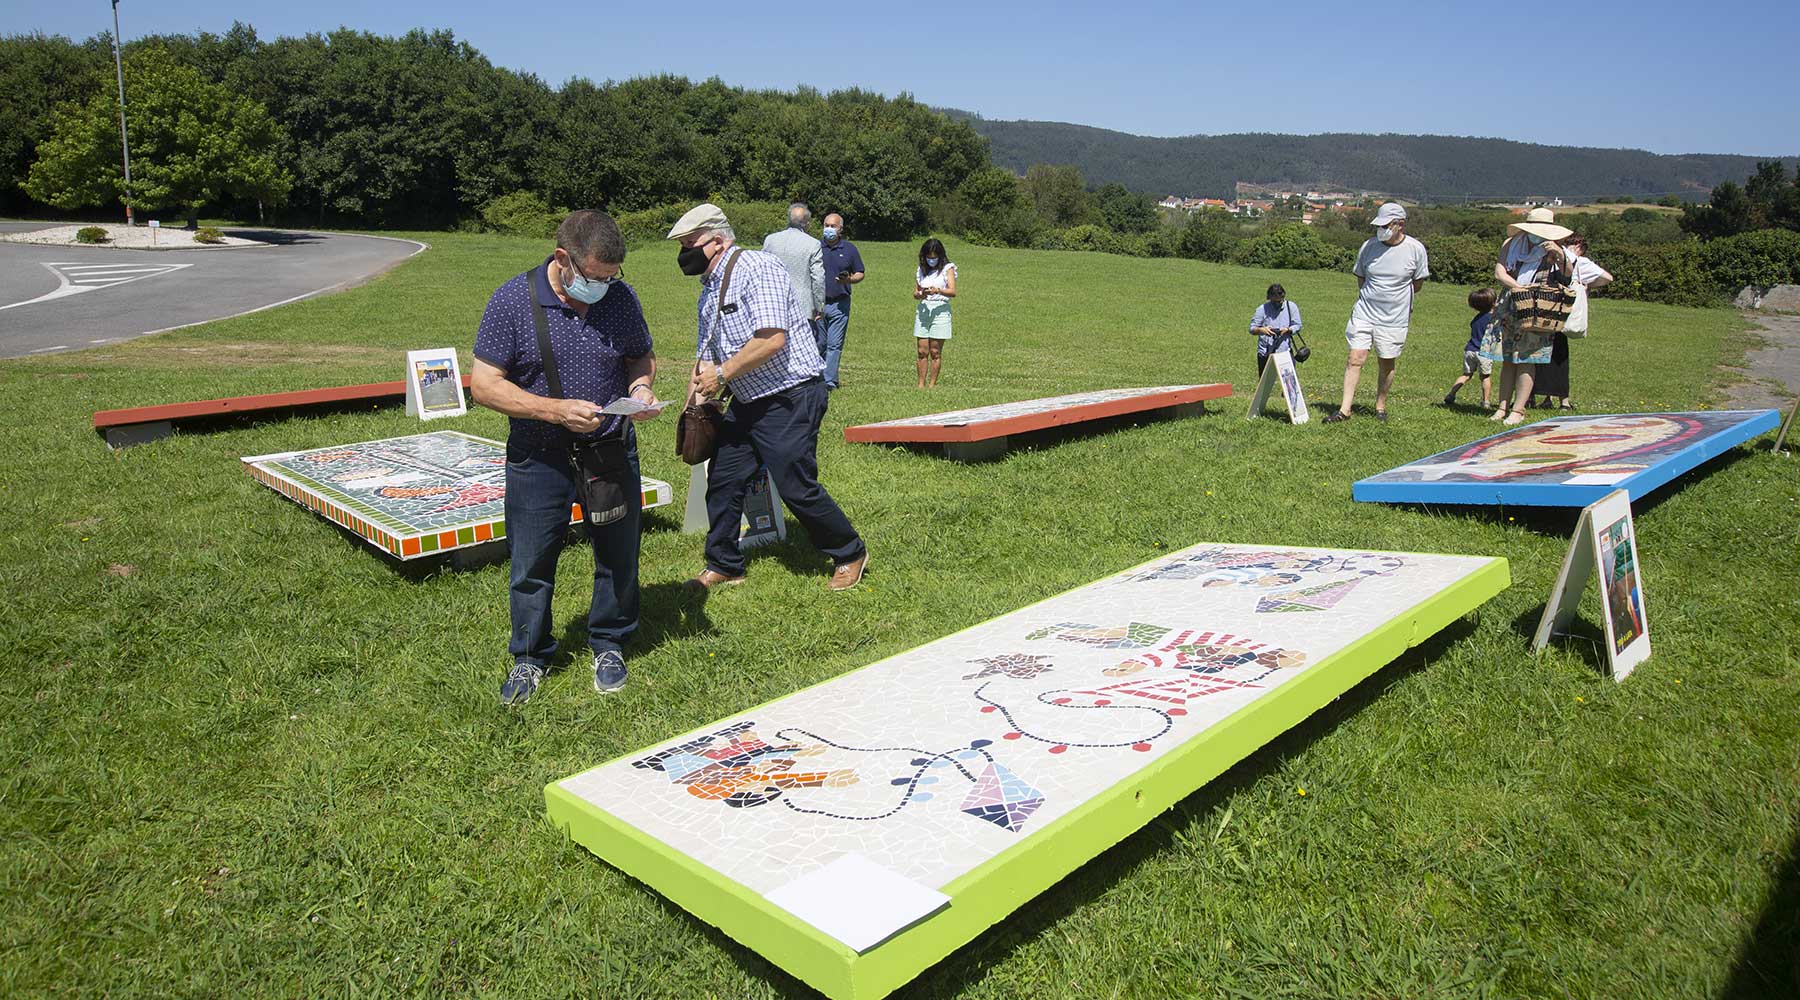 Inaugurada a Exposición ao aire libre dos Xogos e Deportes Tradicionáis nos muraies de azulexo no Melga de Ponteceso